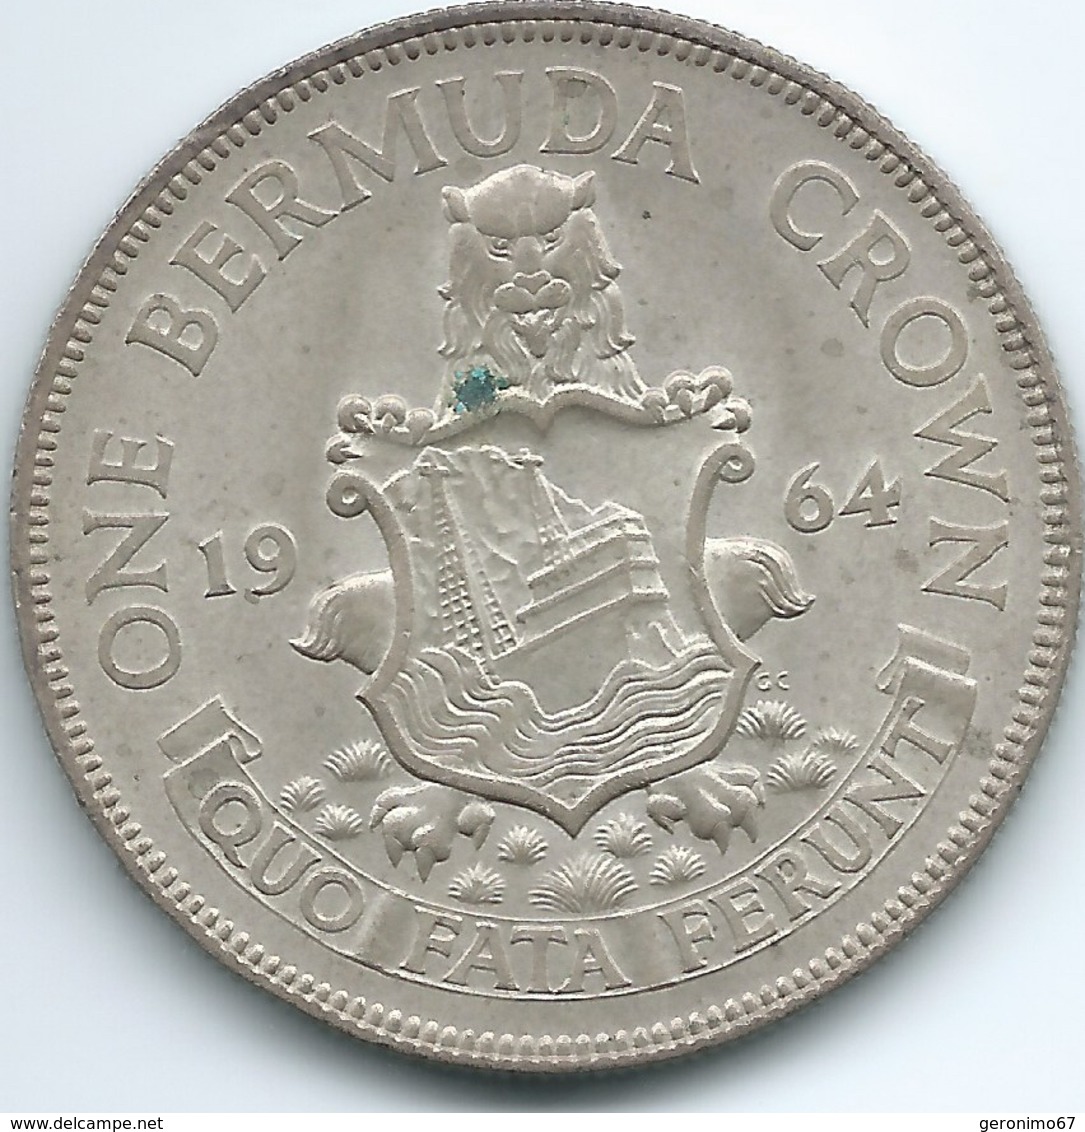 Bermuda - Elizabeth II - 1964 - 1 Crown - KM14 - Bermuda